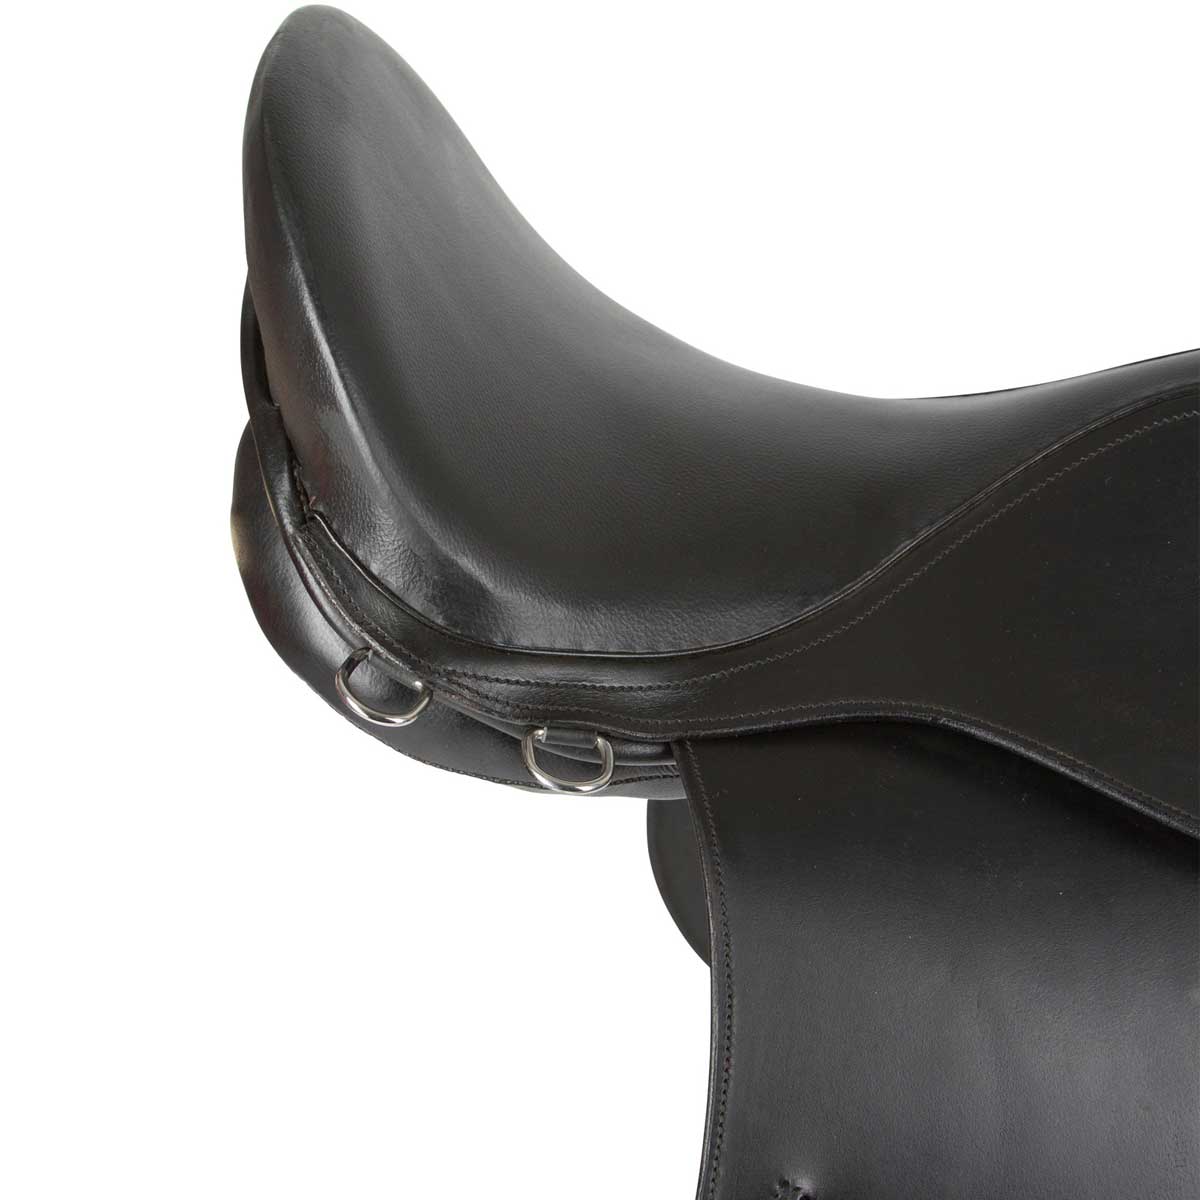 Covalliero Komplett sadeluppsättning Läder Hästsadel Ponnysadel MS